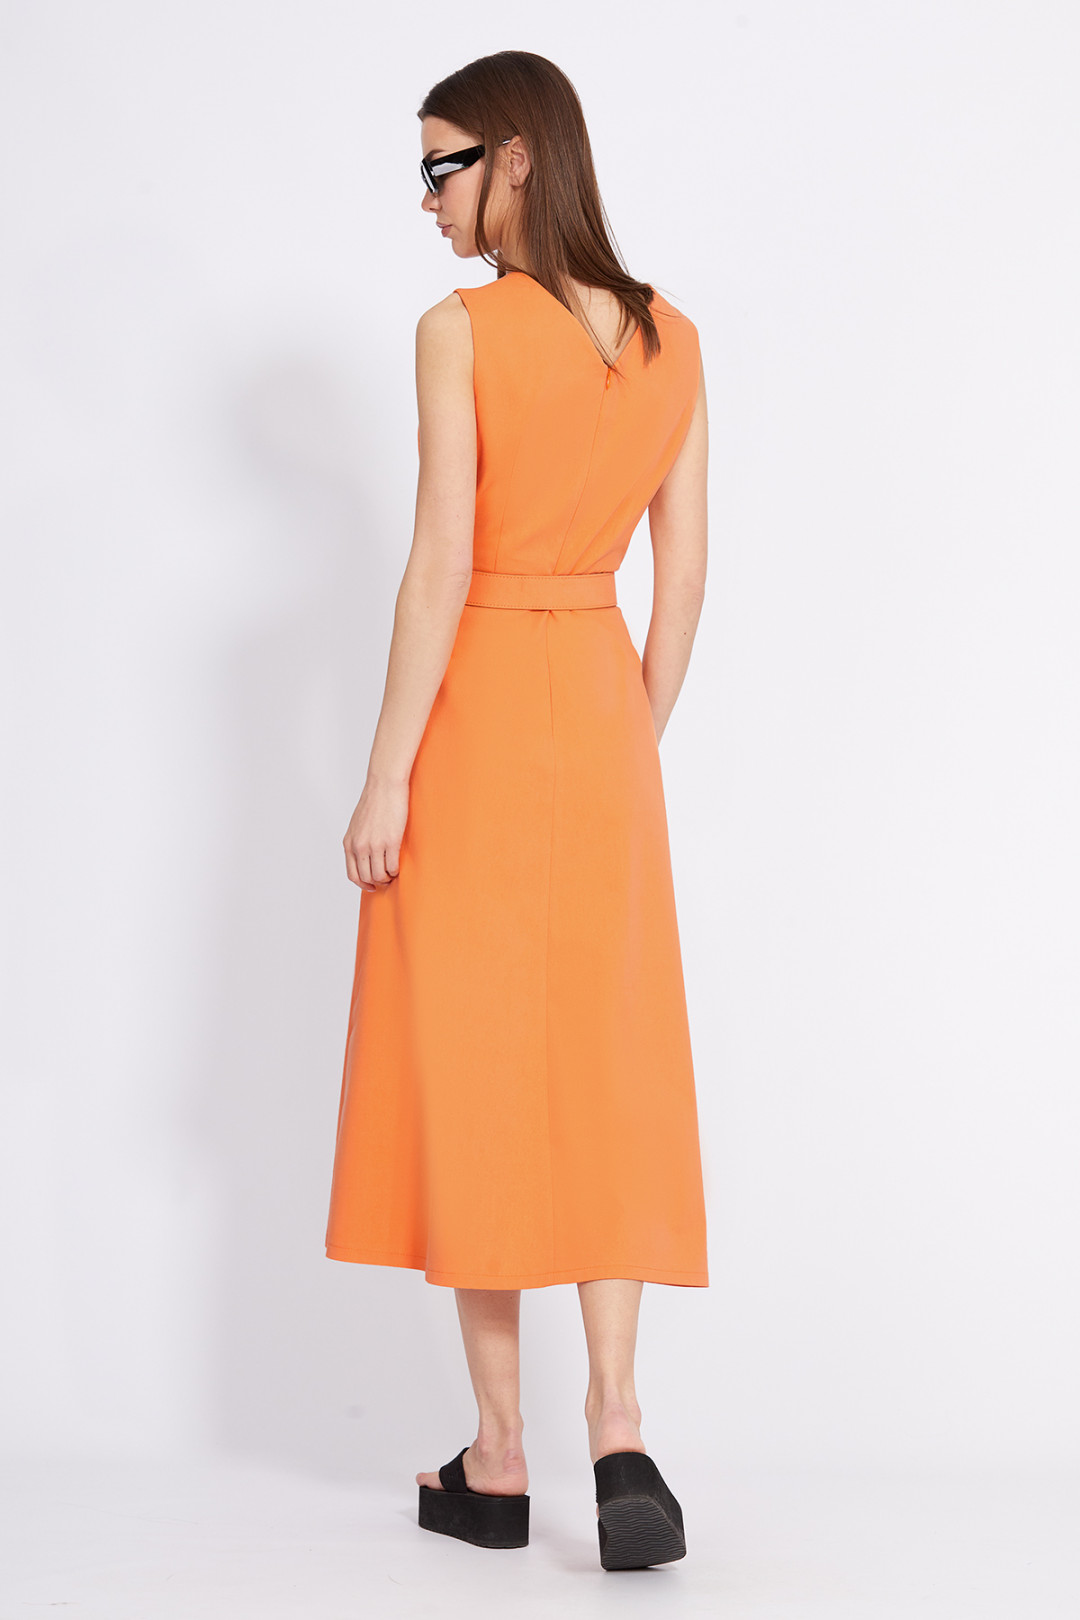 Платье Эола Стиль 2418 оранжевый